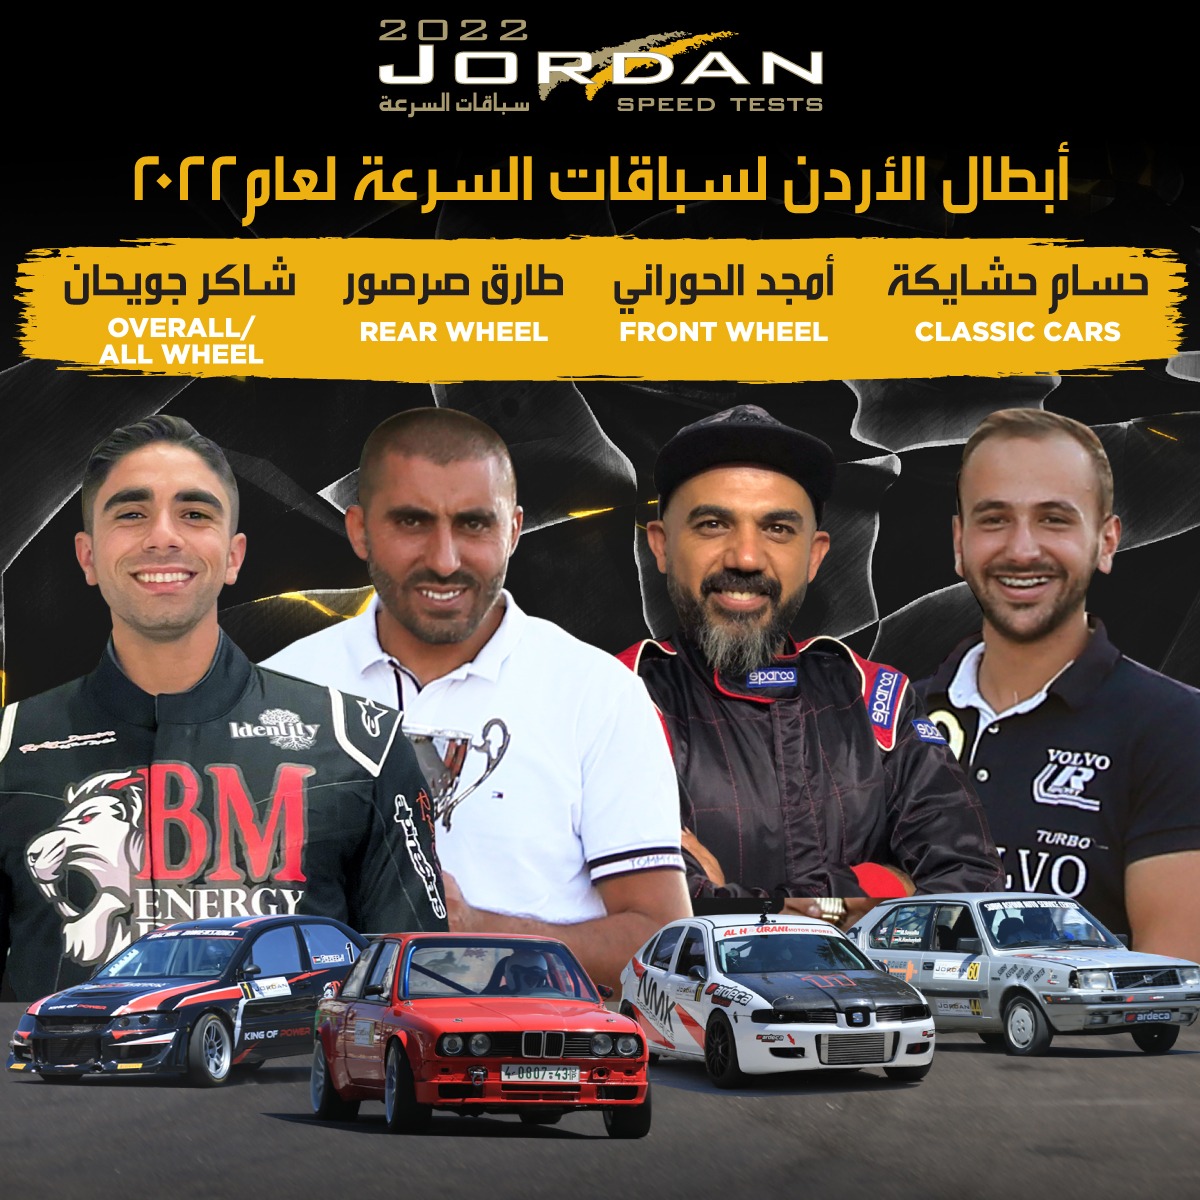 الأردنية لرياضة السيارات تصدر الترتيب العام لبطولة الأردن لسباقات السرعة 2022